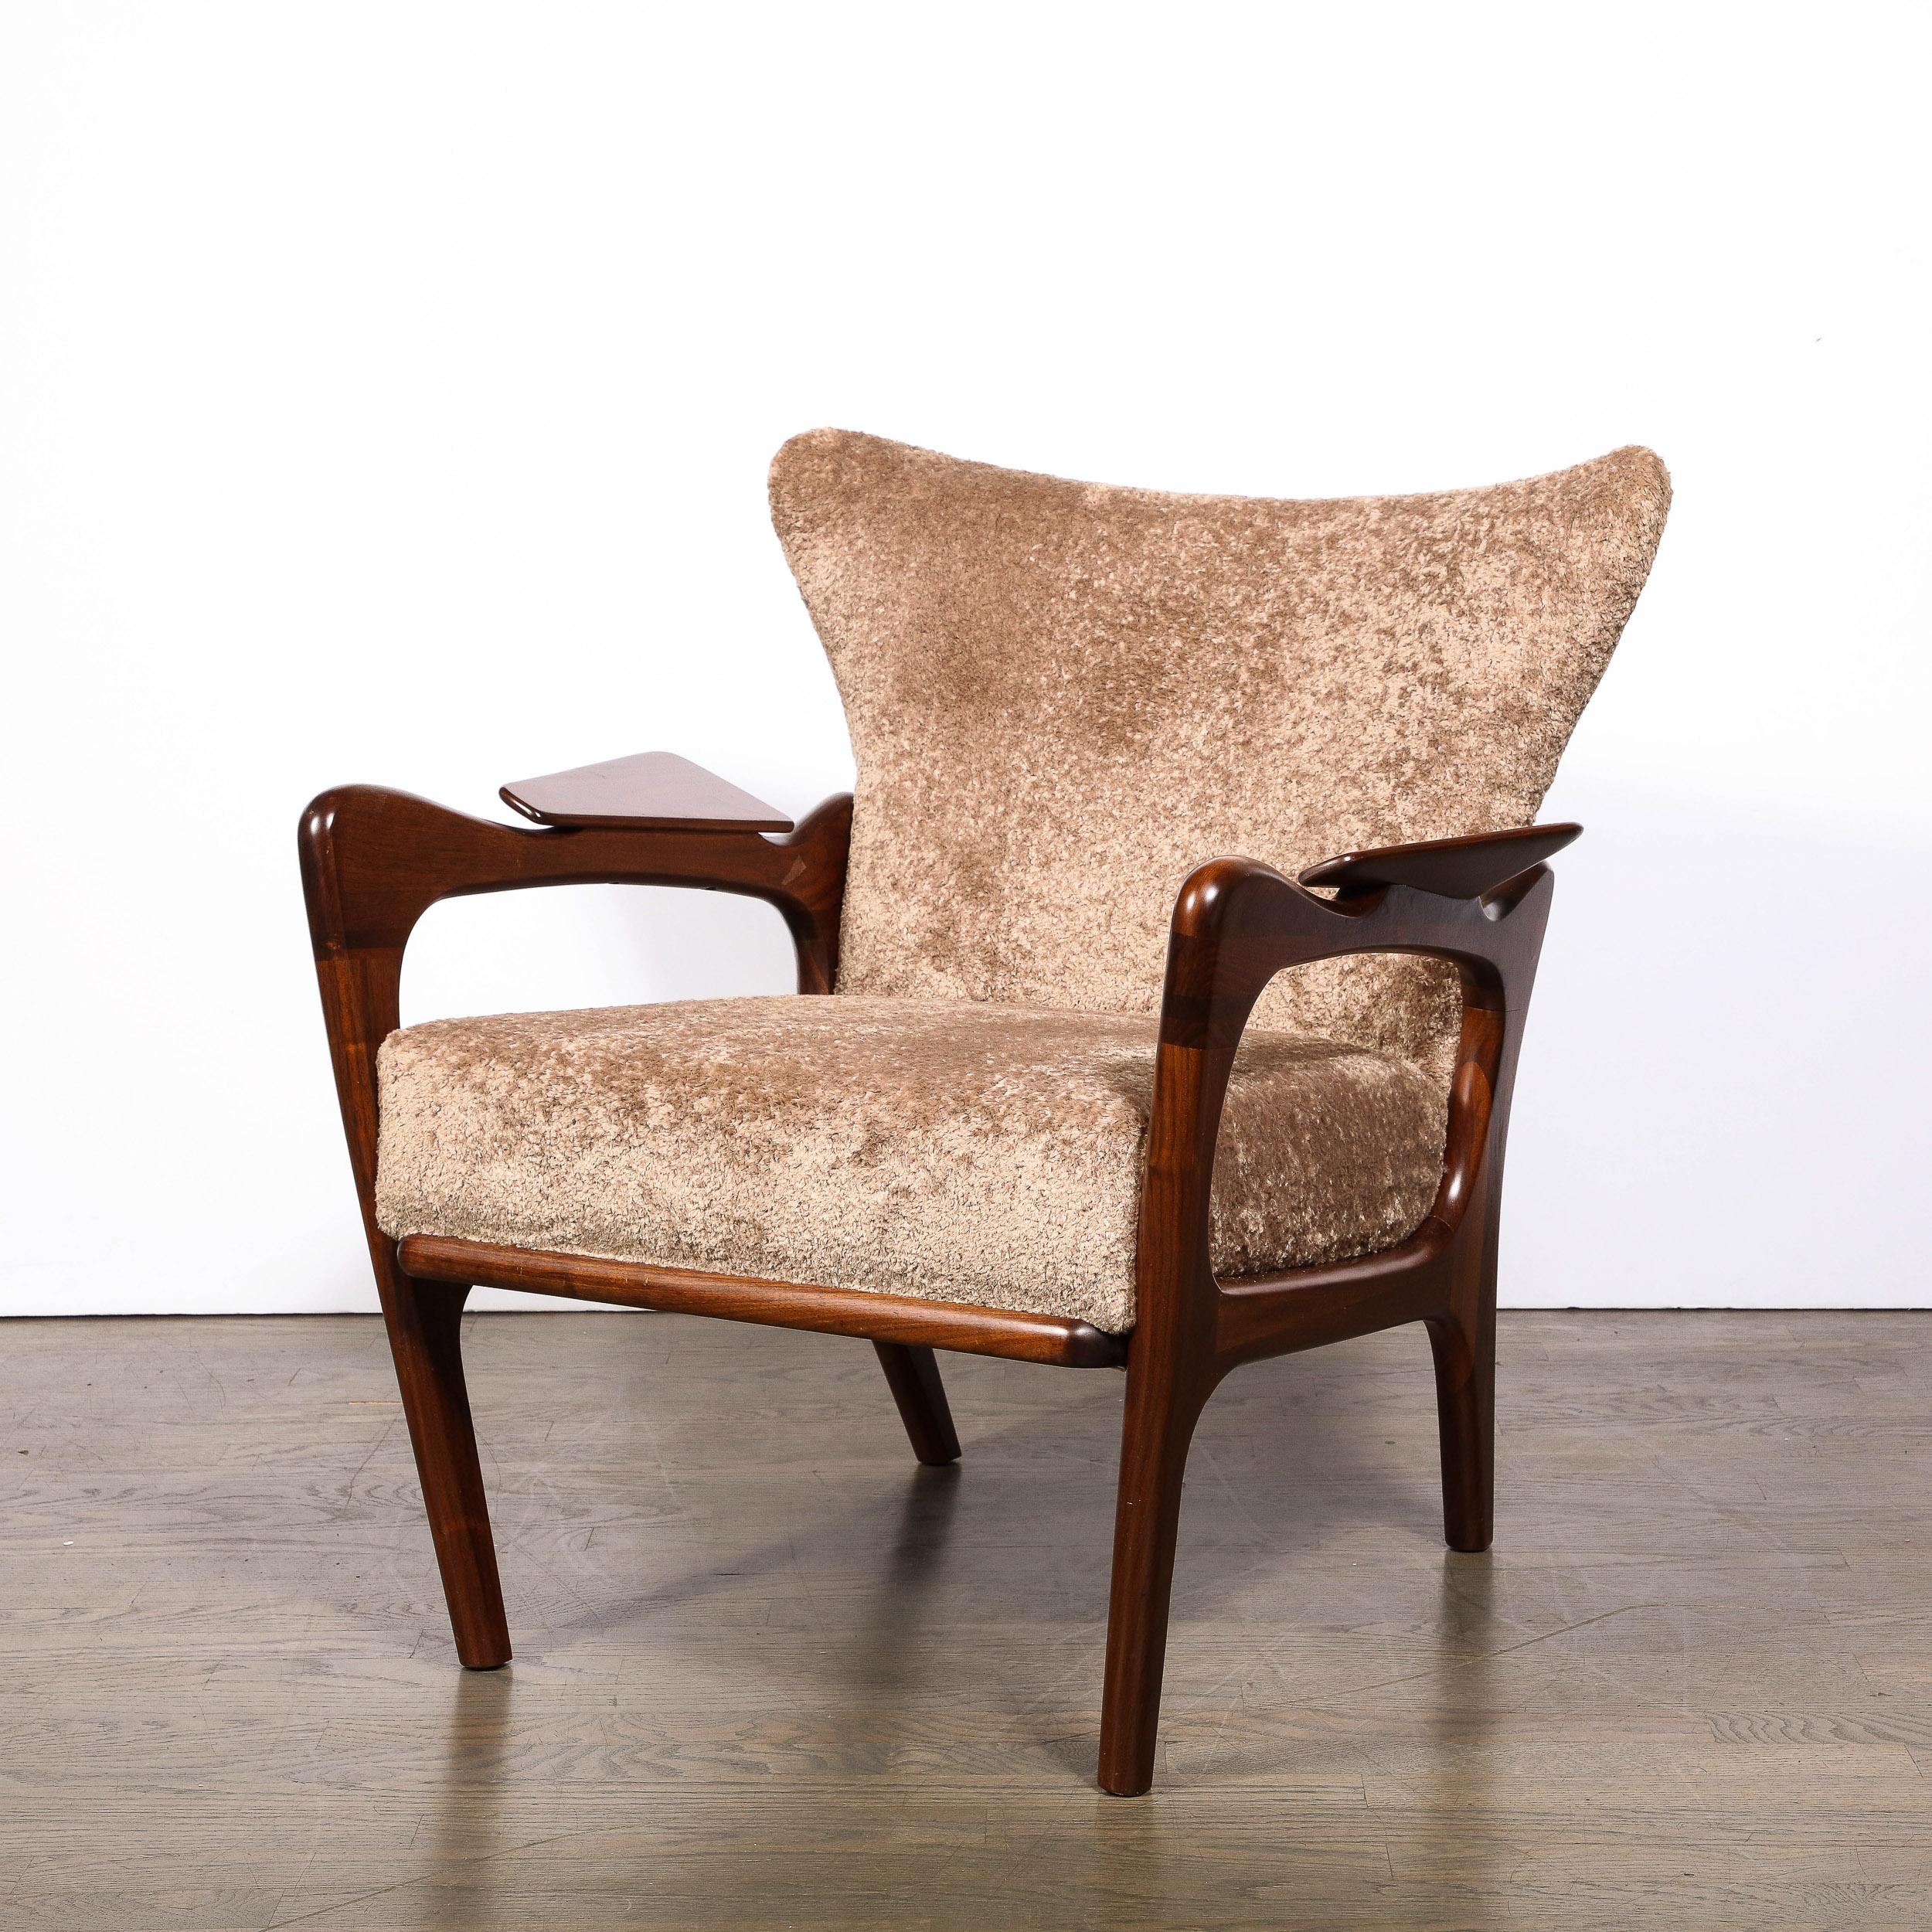 Cet emblématique fauteuil de salon 2291-C de style Mid-Century Modern a été réalisé par le légendaire designer Adrian Pearsall aux États-Unis vers 1960. Il se caractérise par des pieds avant subtilement angulaires et des pieds arrière dramatiquement